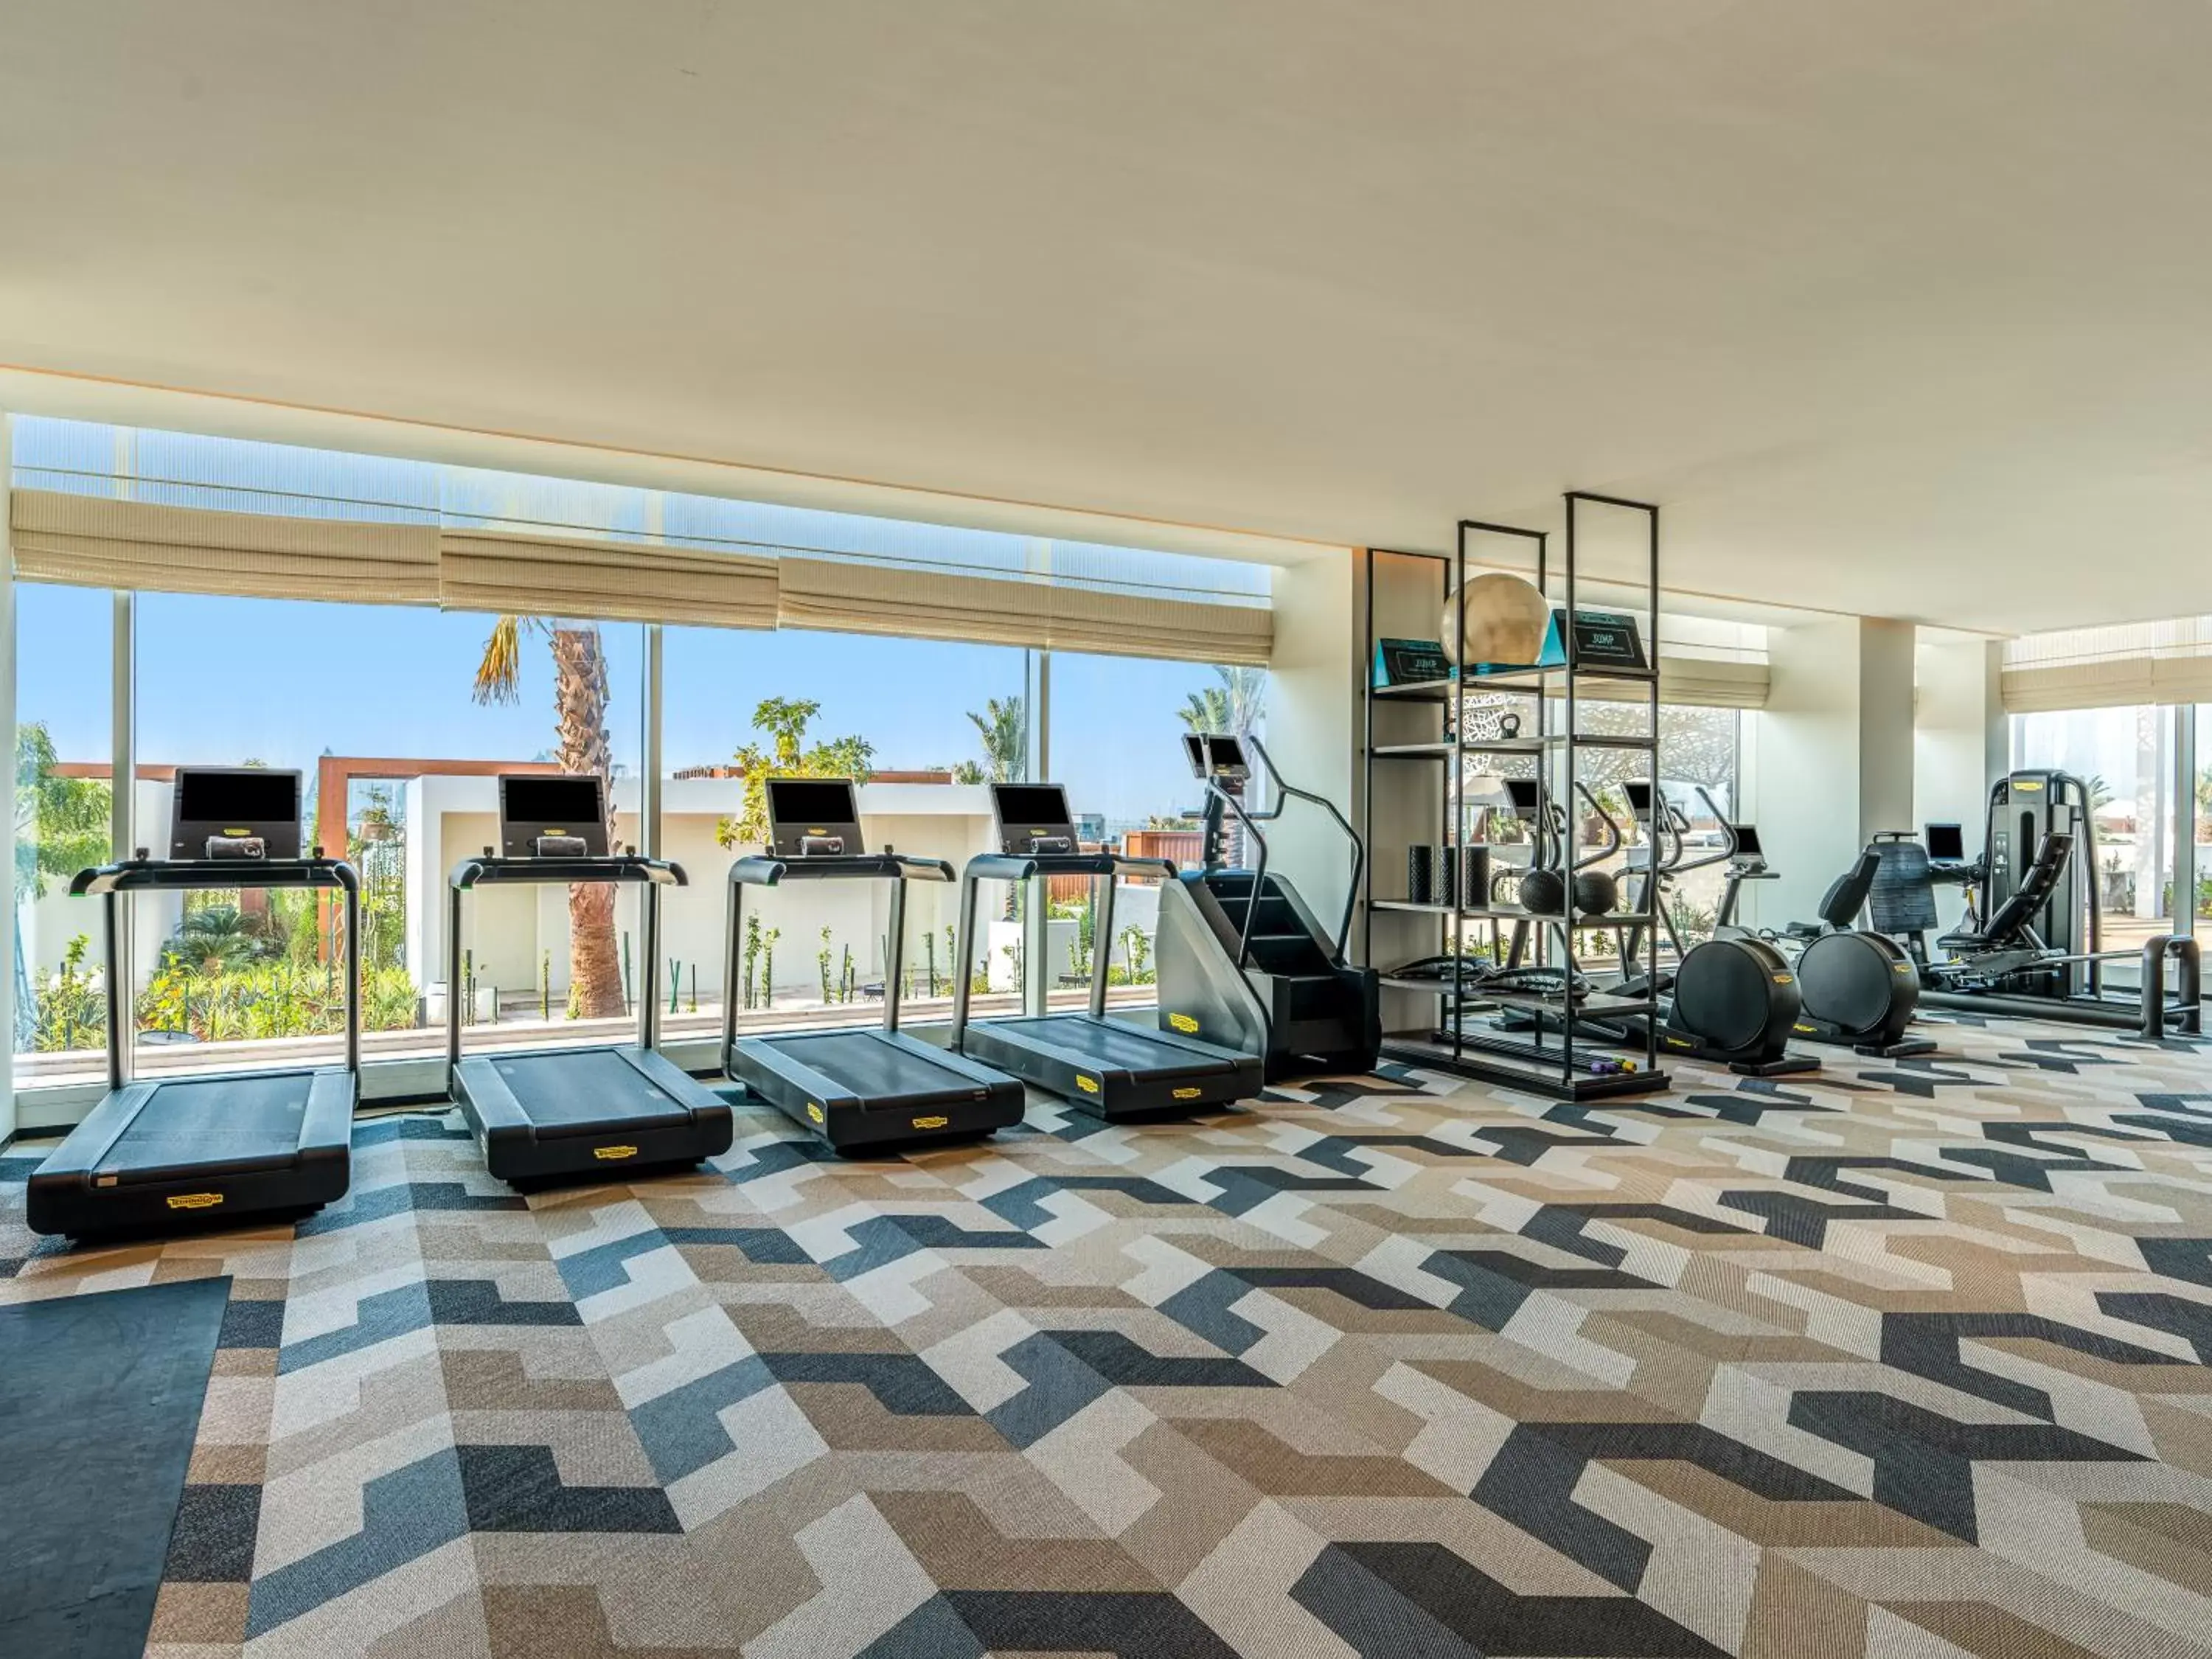 Fitness centre/facilities, Fitness Center/Facilities in Rixos Gulf Hotel Doha - All Inclusive